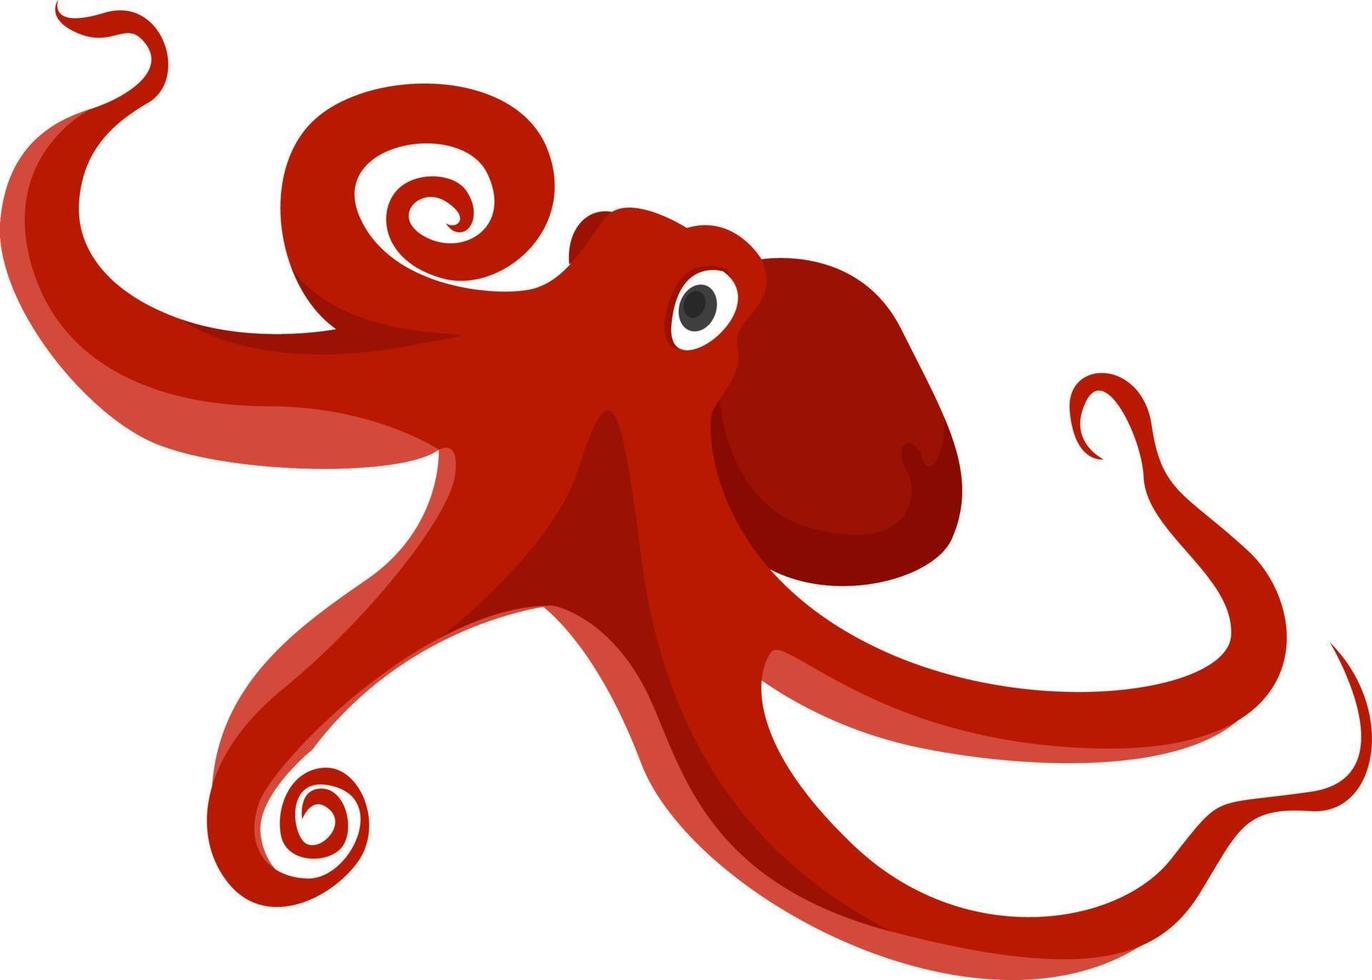 röd bläckfisk, illustration, vektor på vit bakgrund